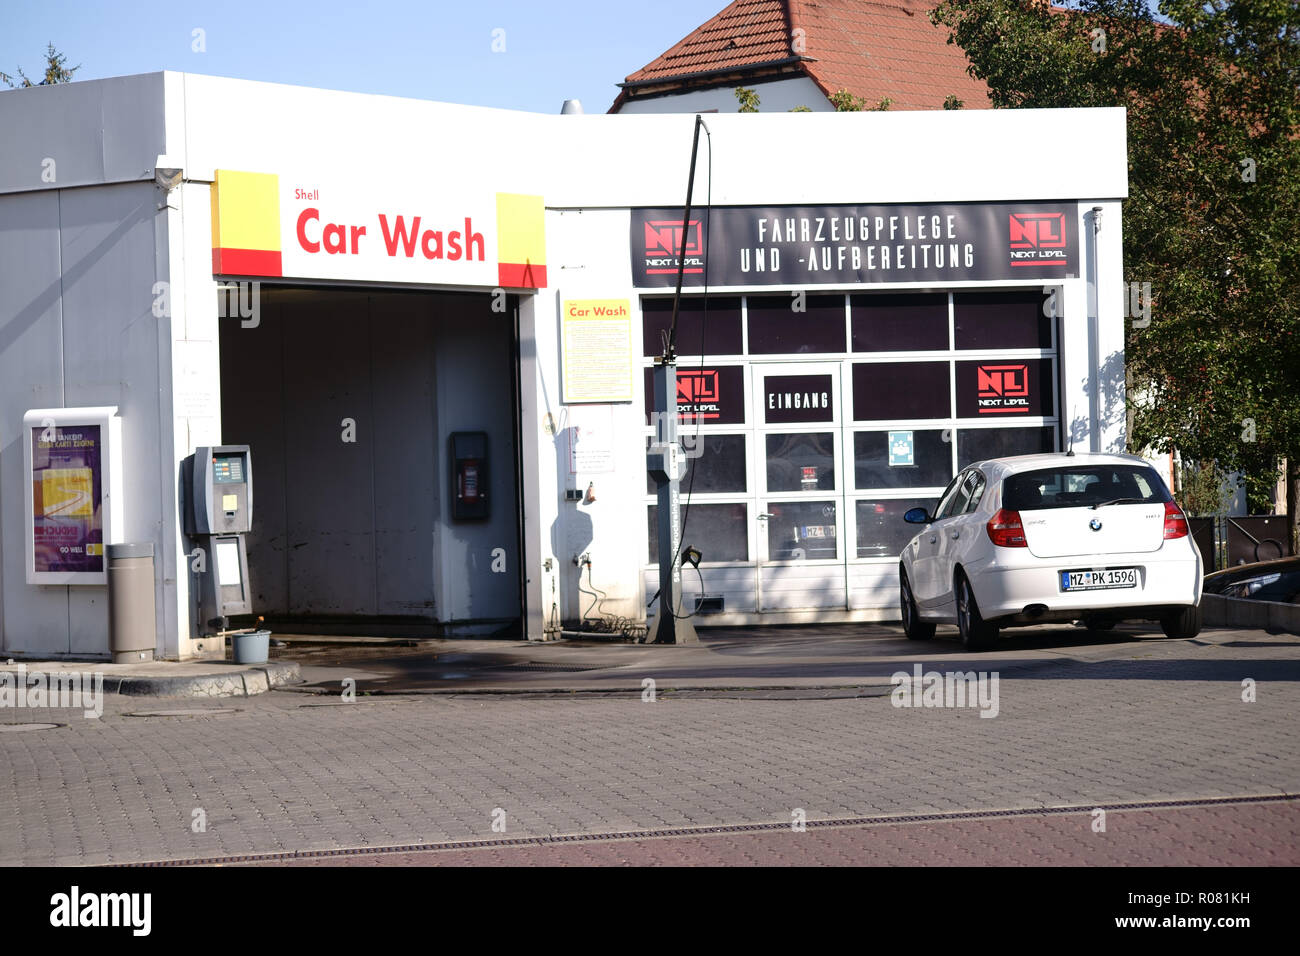 Mainz, Deutschland - 15. September 2018: Ein Auto ist vor ein Auto waschen  an der Shell Tankstelle geparkt am 15 September, 2018 in Mainz  Stockfotografie - Alamy